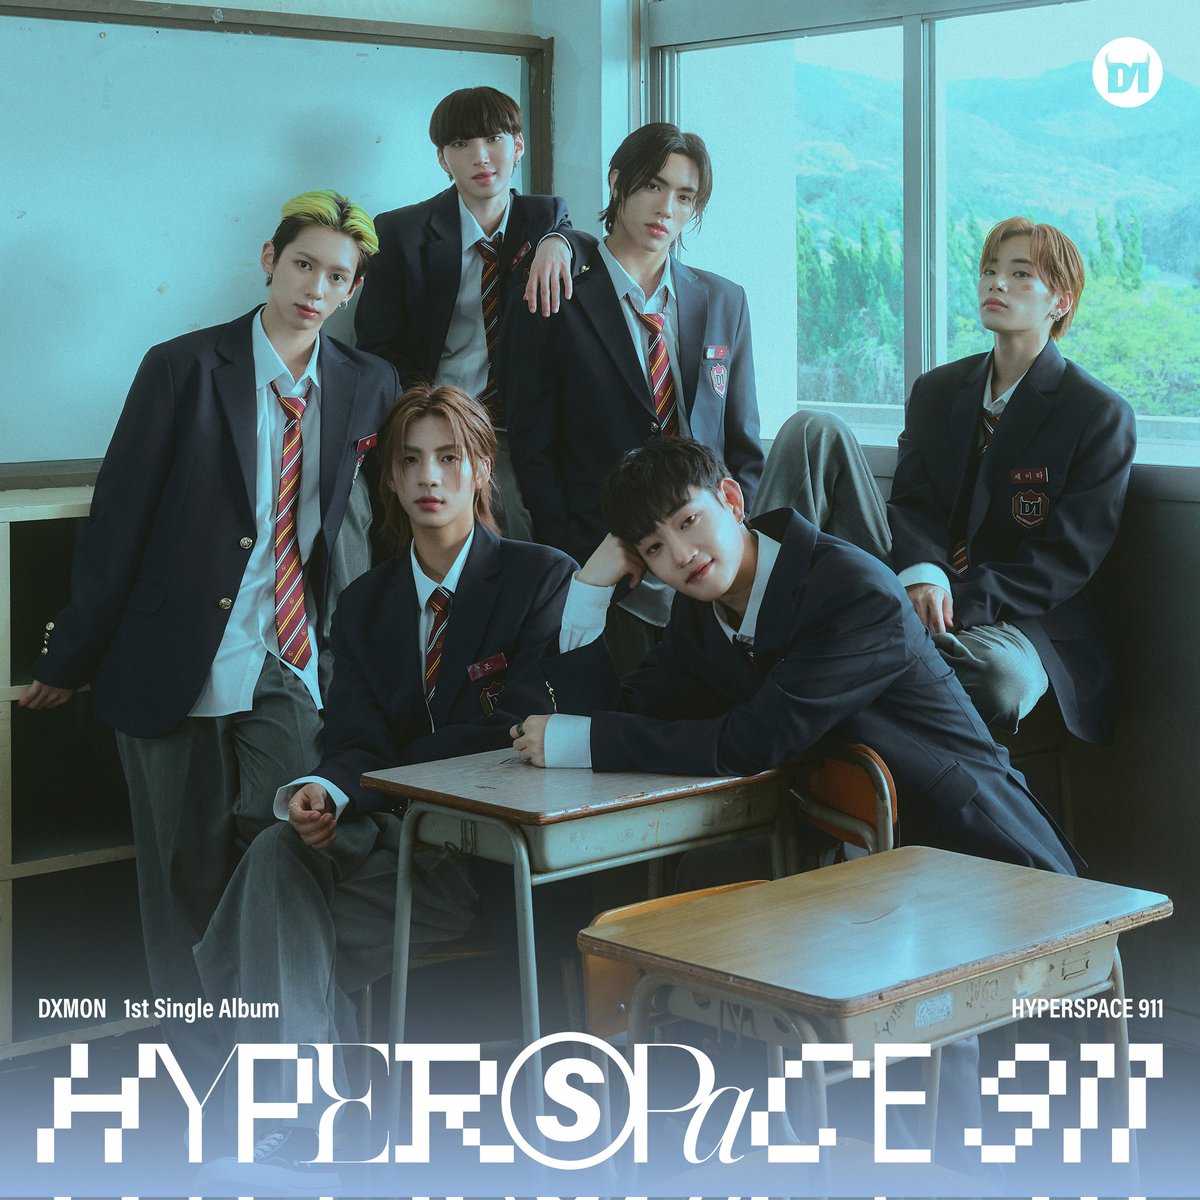 O 1° single album do DXMON, 'HYPERSPACE 911', encerrou a primeira semana de vendas com 24.382 cópias vendidas. cr.: koreansales_twt